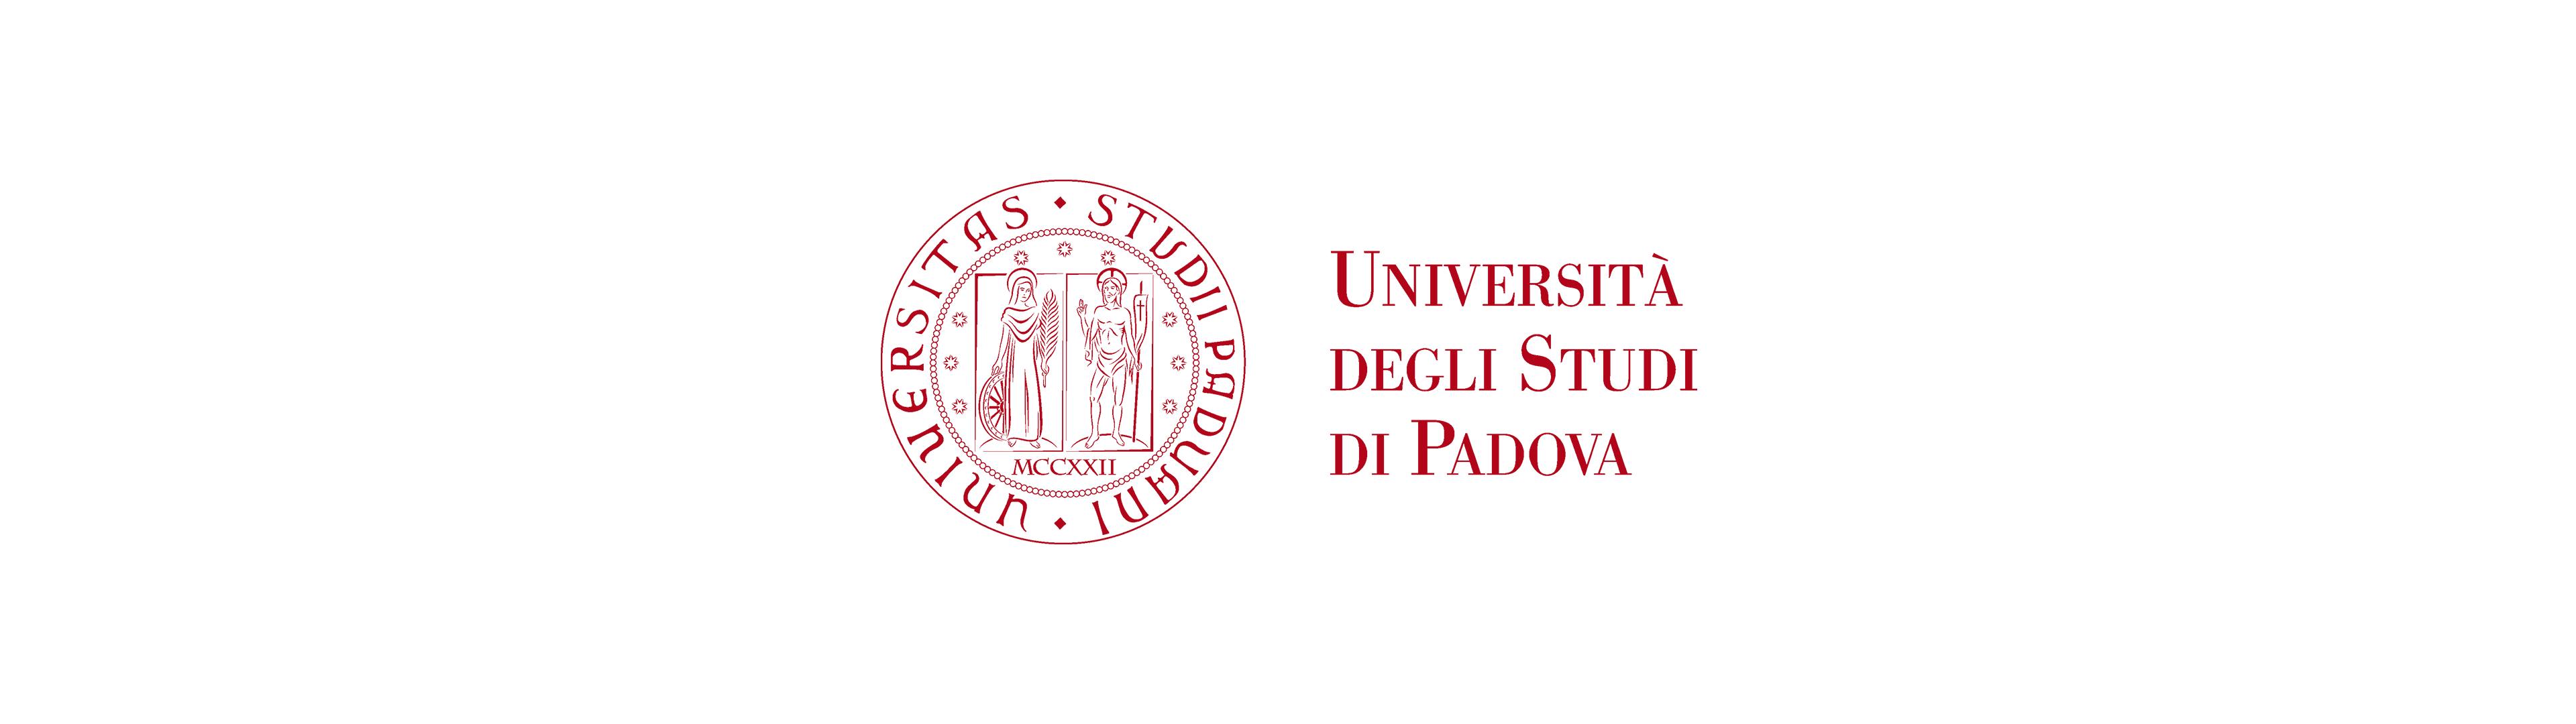 Logo dell'Università degli Studi di Padova di colore rosso su sfondo bianco.